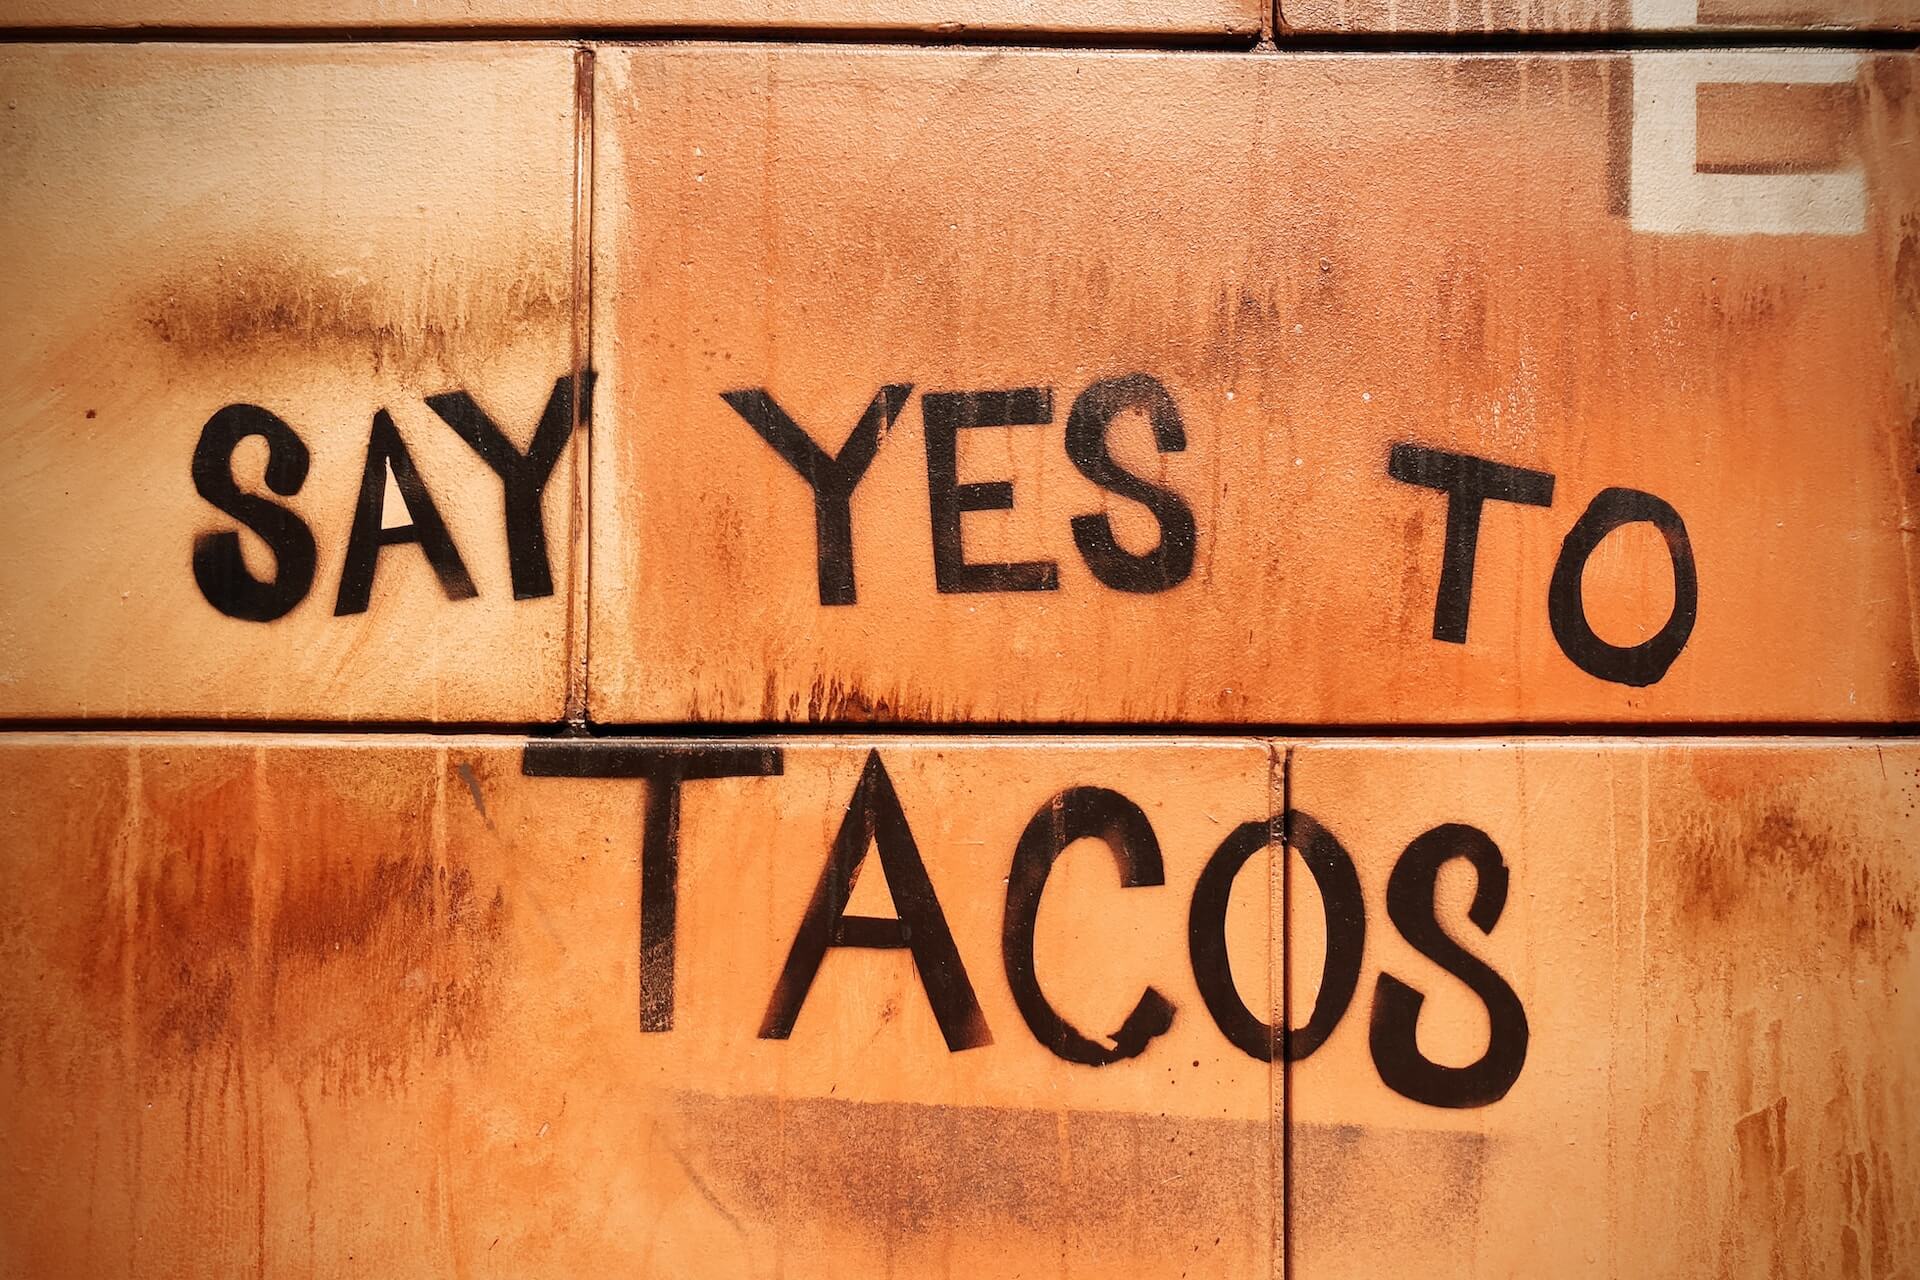 "Say yes to tacos" graffiti